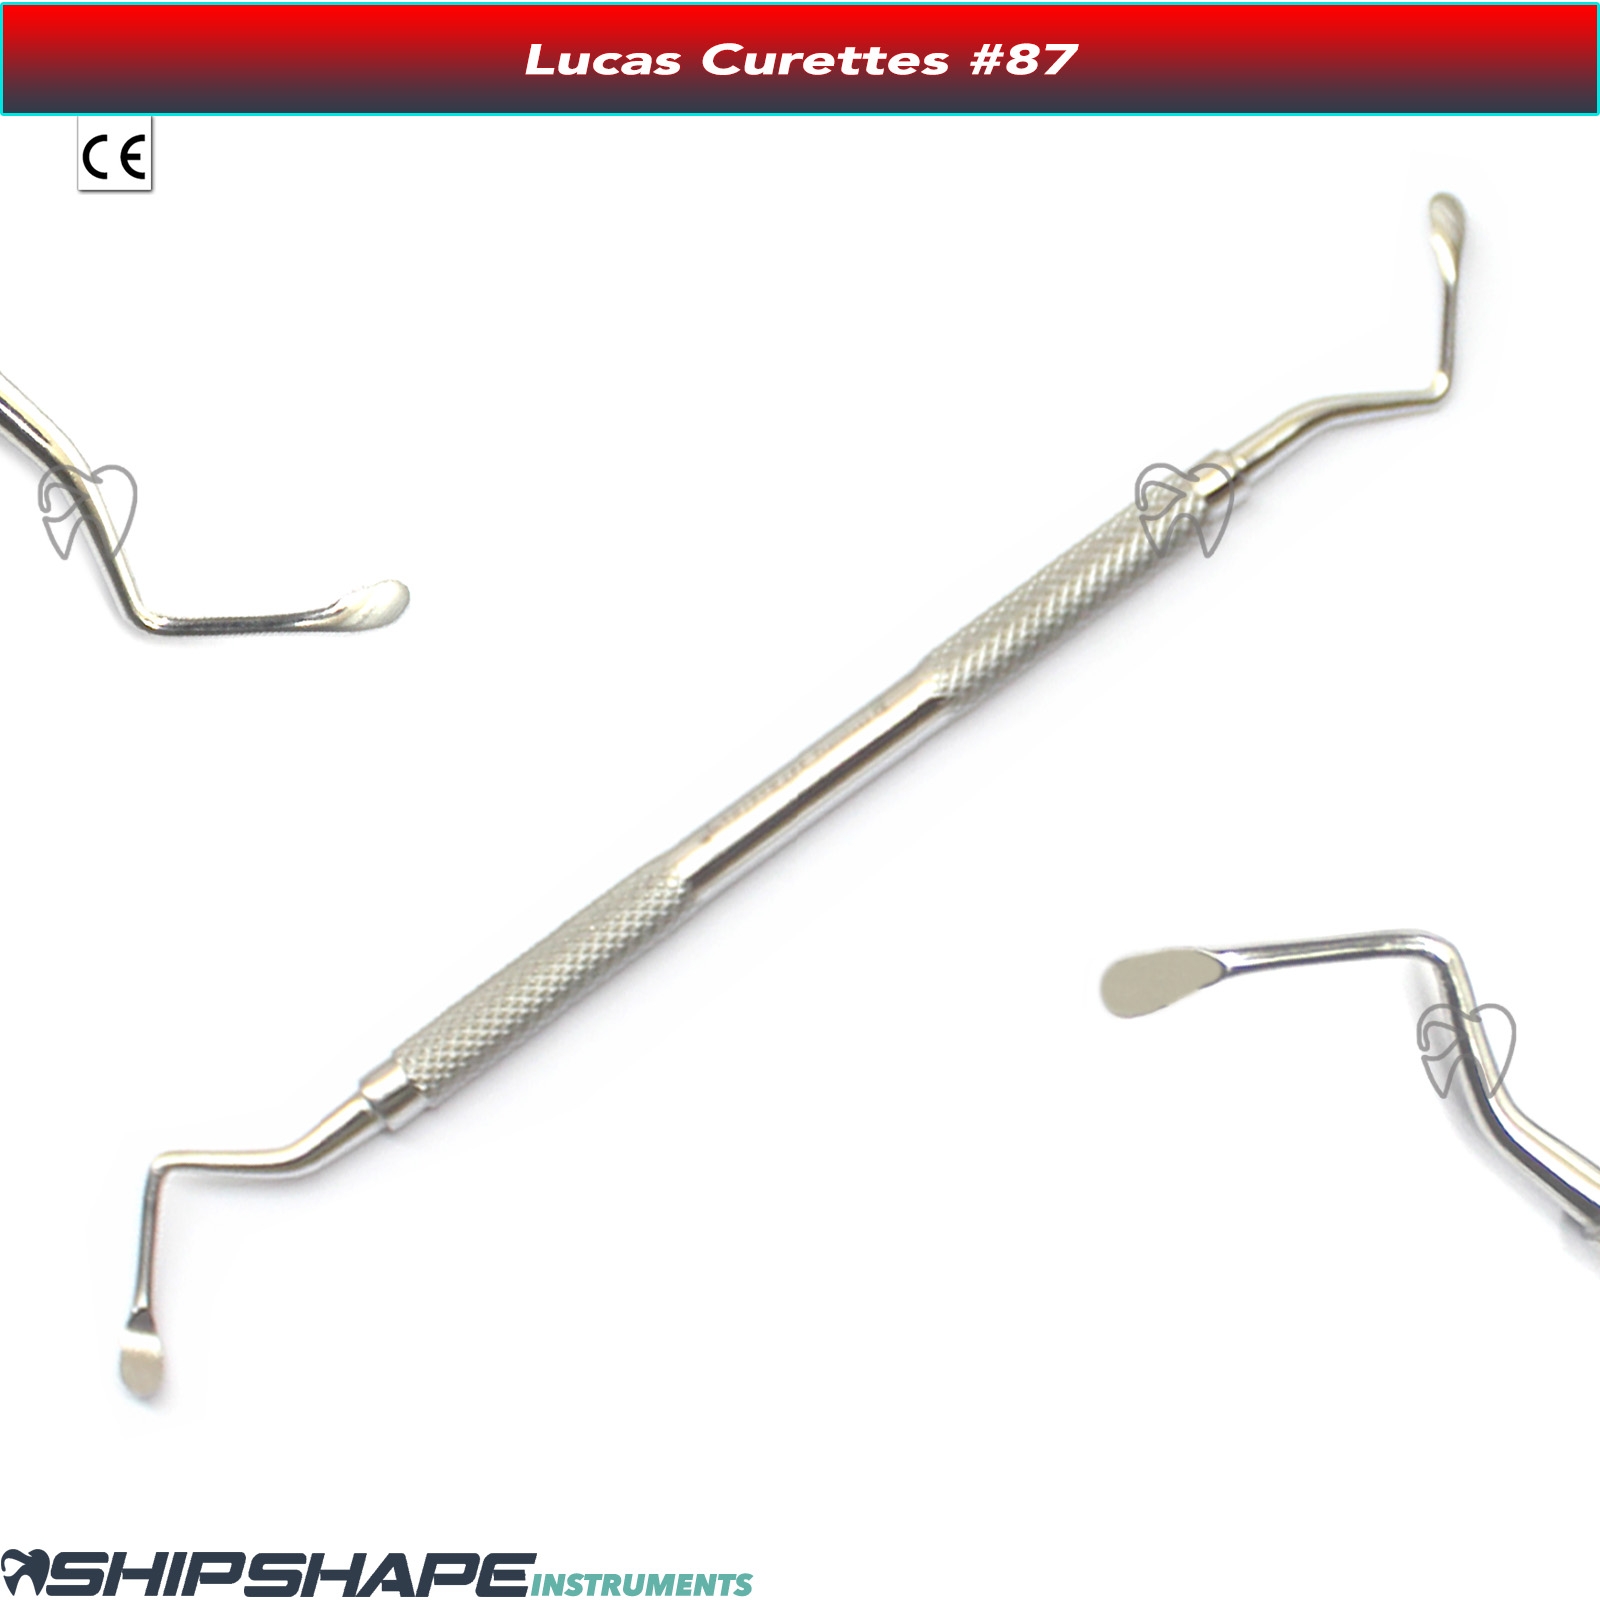 Lucas Curette Periodontal Bone Curettes Dental Surgical Instruments Fig no. #85, #86, #87, #88-1698